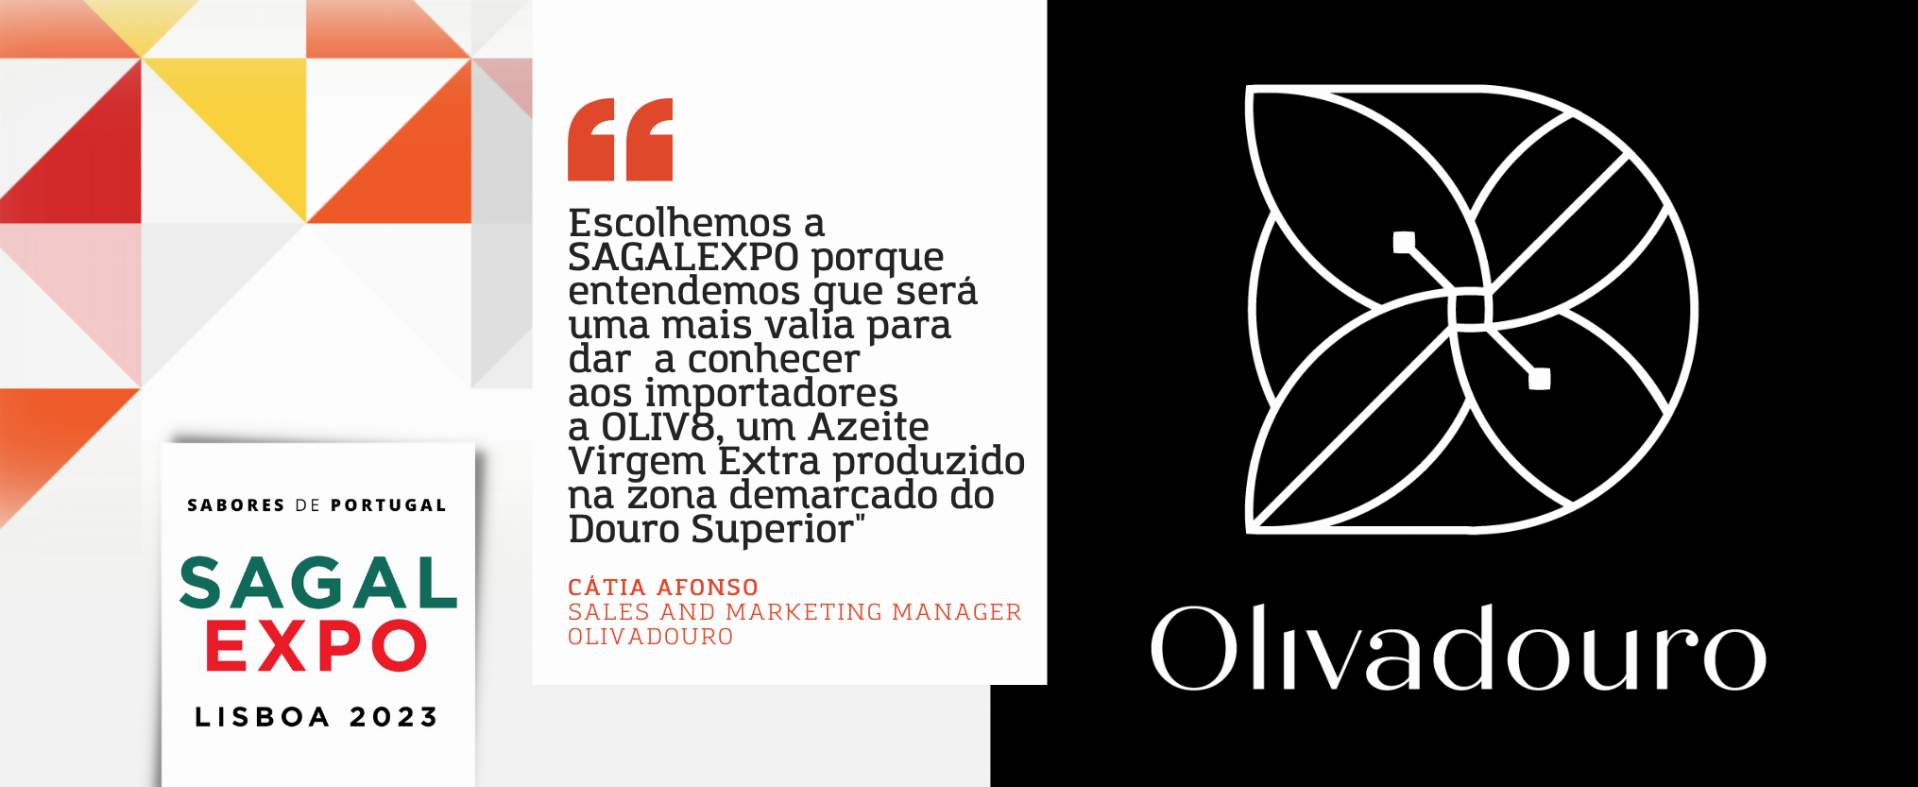 Olivadouro: “Escolhemos a SAGALEXPO porque entendemos que será uma mais valia para dar a conhecer aos importadores a OLIV8, um Azeite Virgem Extra produzido na zona demarcado do Douro Superior"